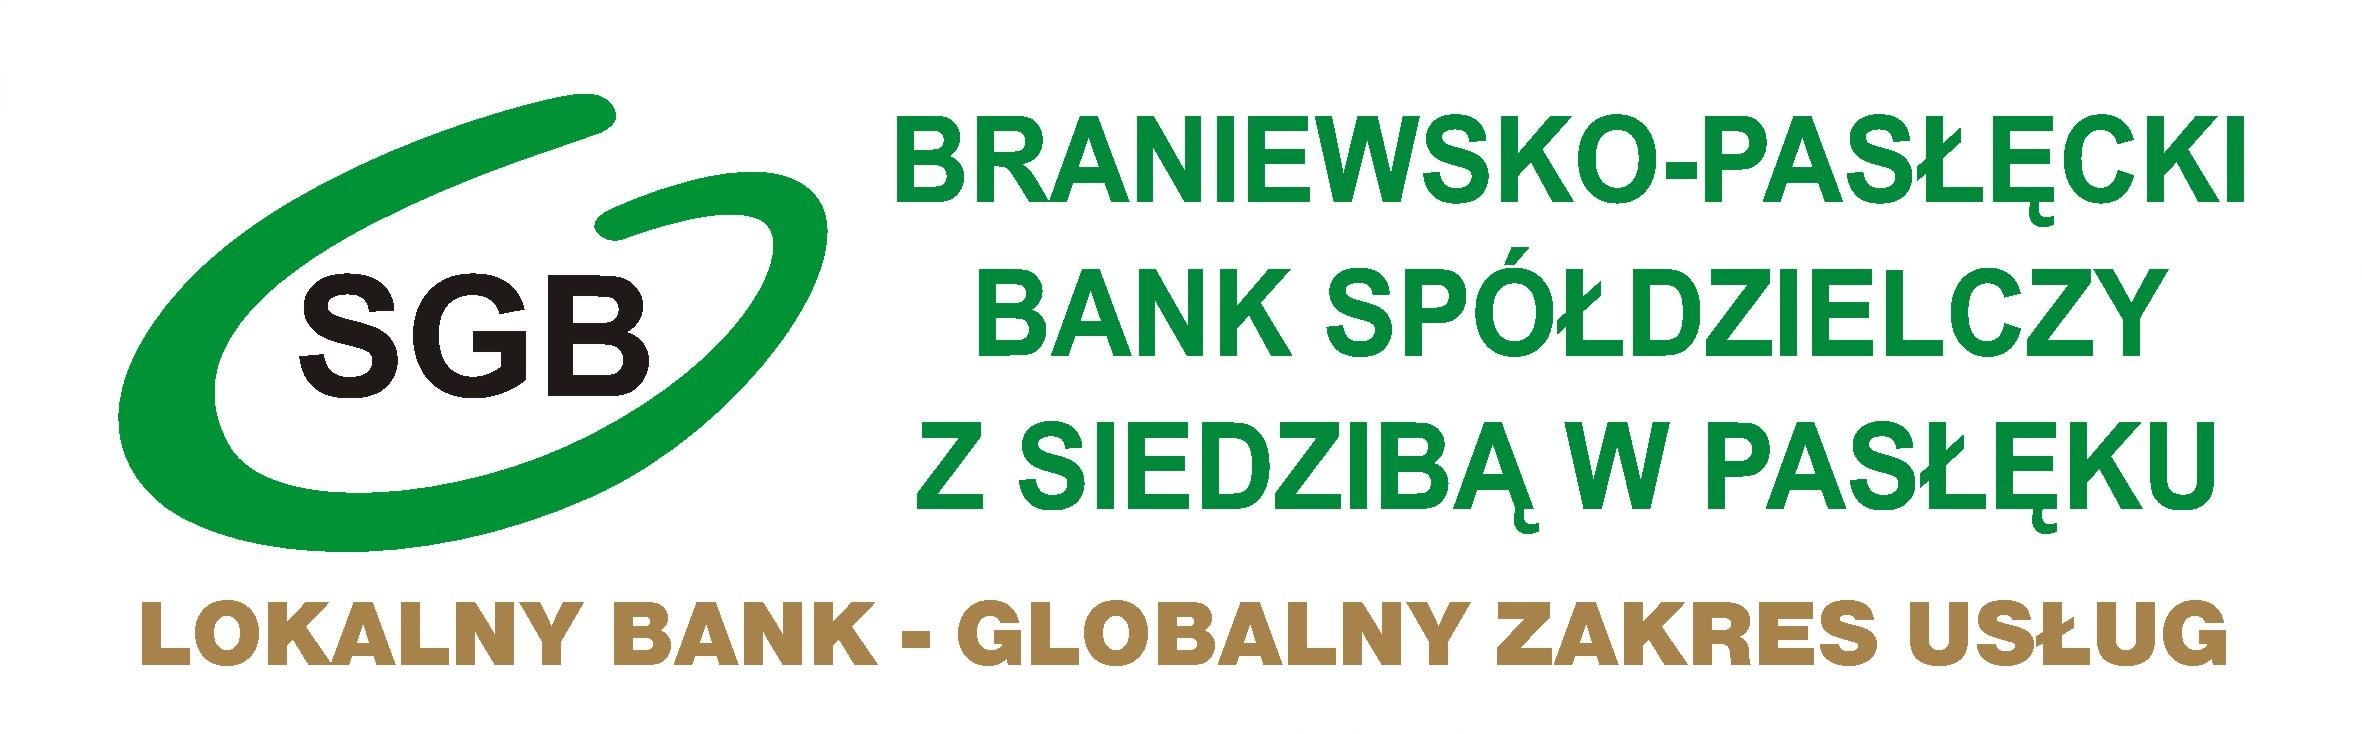 O Banku - Braniewsko-Pasłęcki Bank Spółdzielczy z siedzibą w Pasłęku